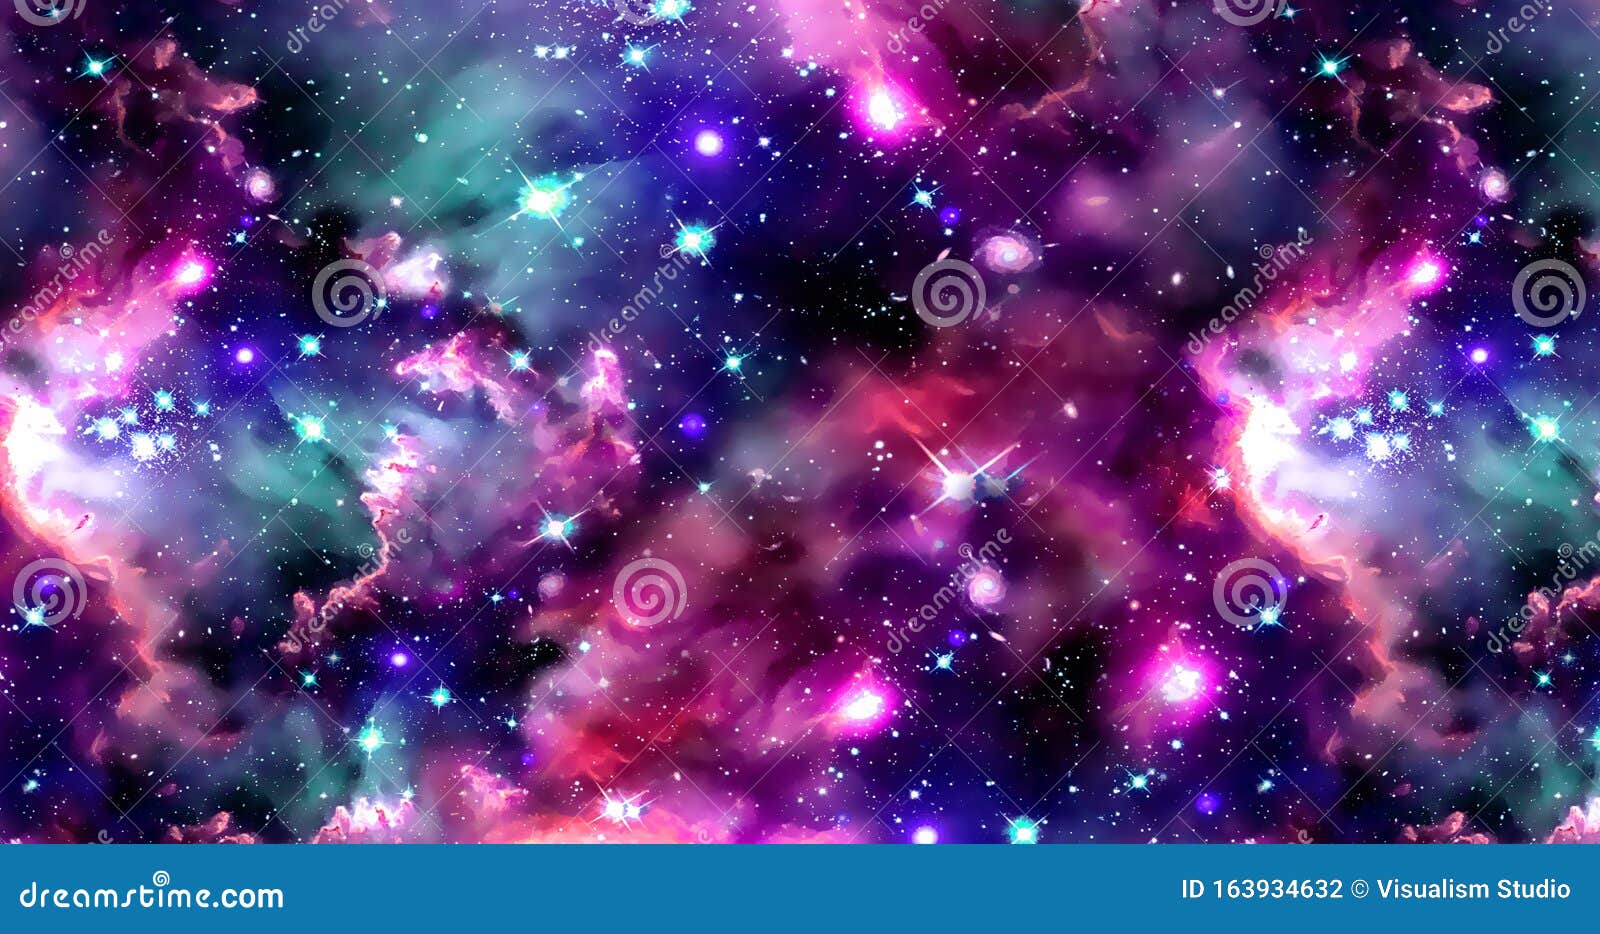 Hình nền thiên hà trừu tượng với các vì sao và hành tinh đầy màu sắc sẽ làm bạn phải trầm trồ ngỡ ngàng. Với những hiệu ứng ánh sáng đặc biệt, các hình ảnh này sẽ khiến bạn như bị cuốn hút vào một thế giới khác.